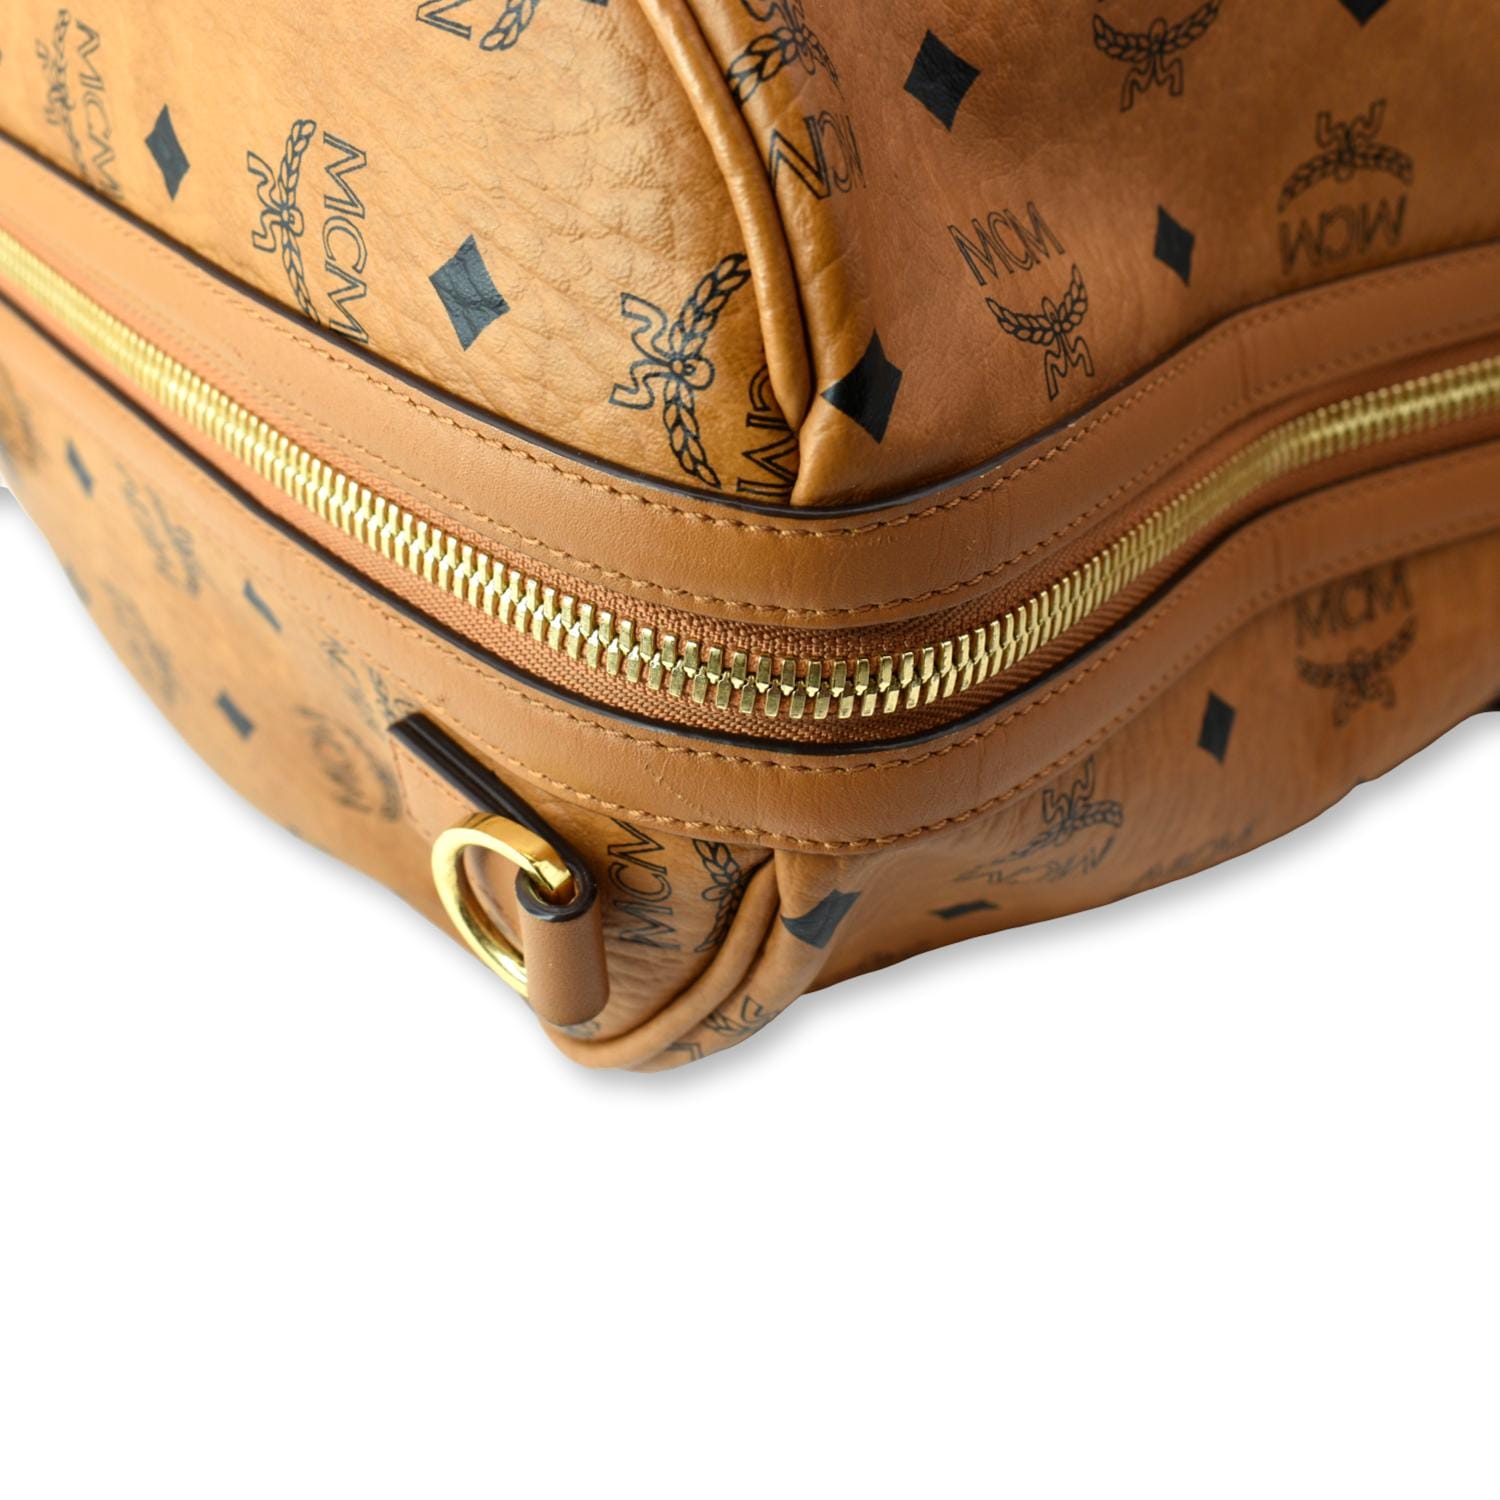 45 Cm / 17.7 Traveler Weekender Bag in Visetos Blue